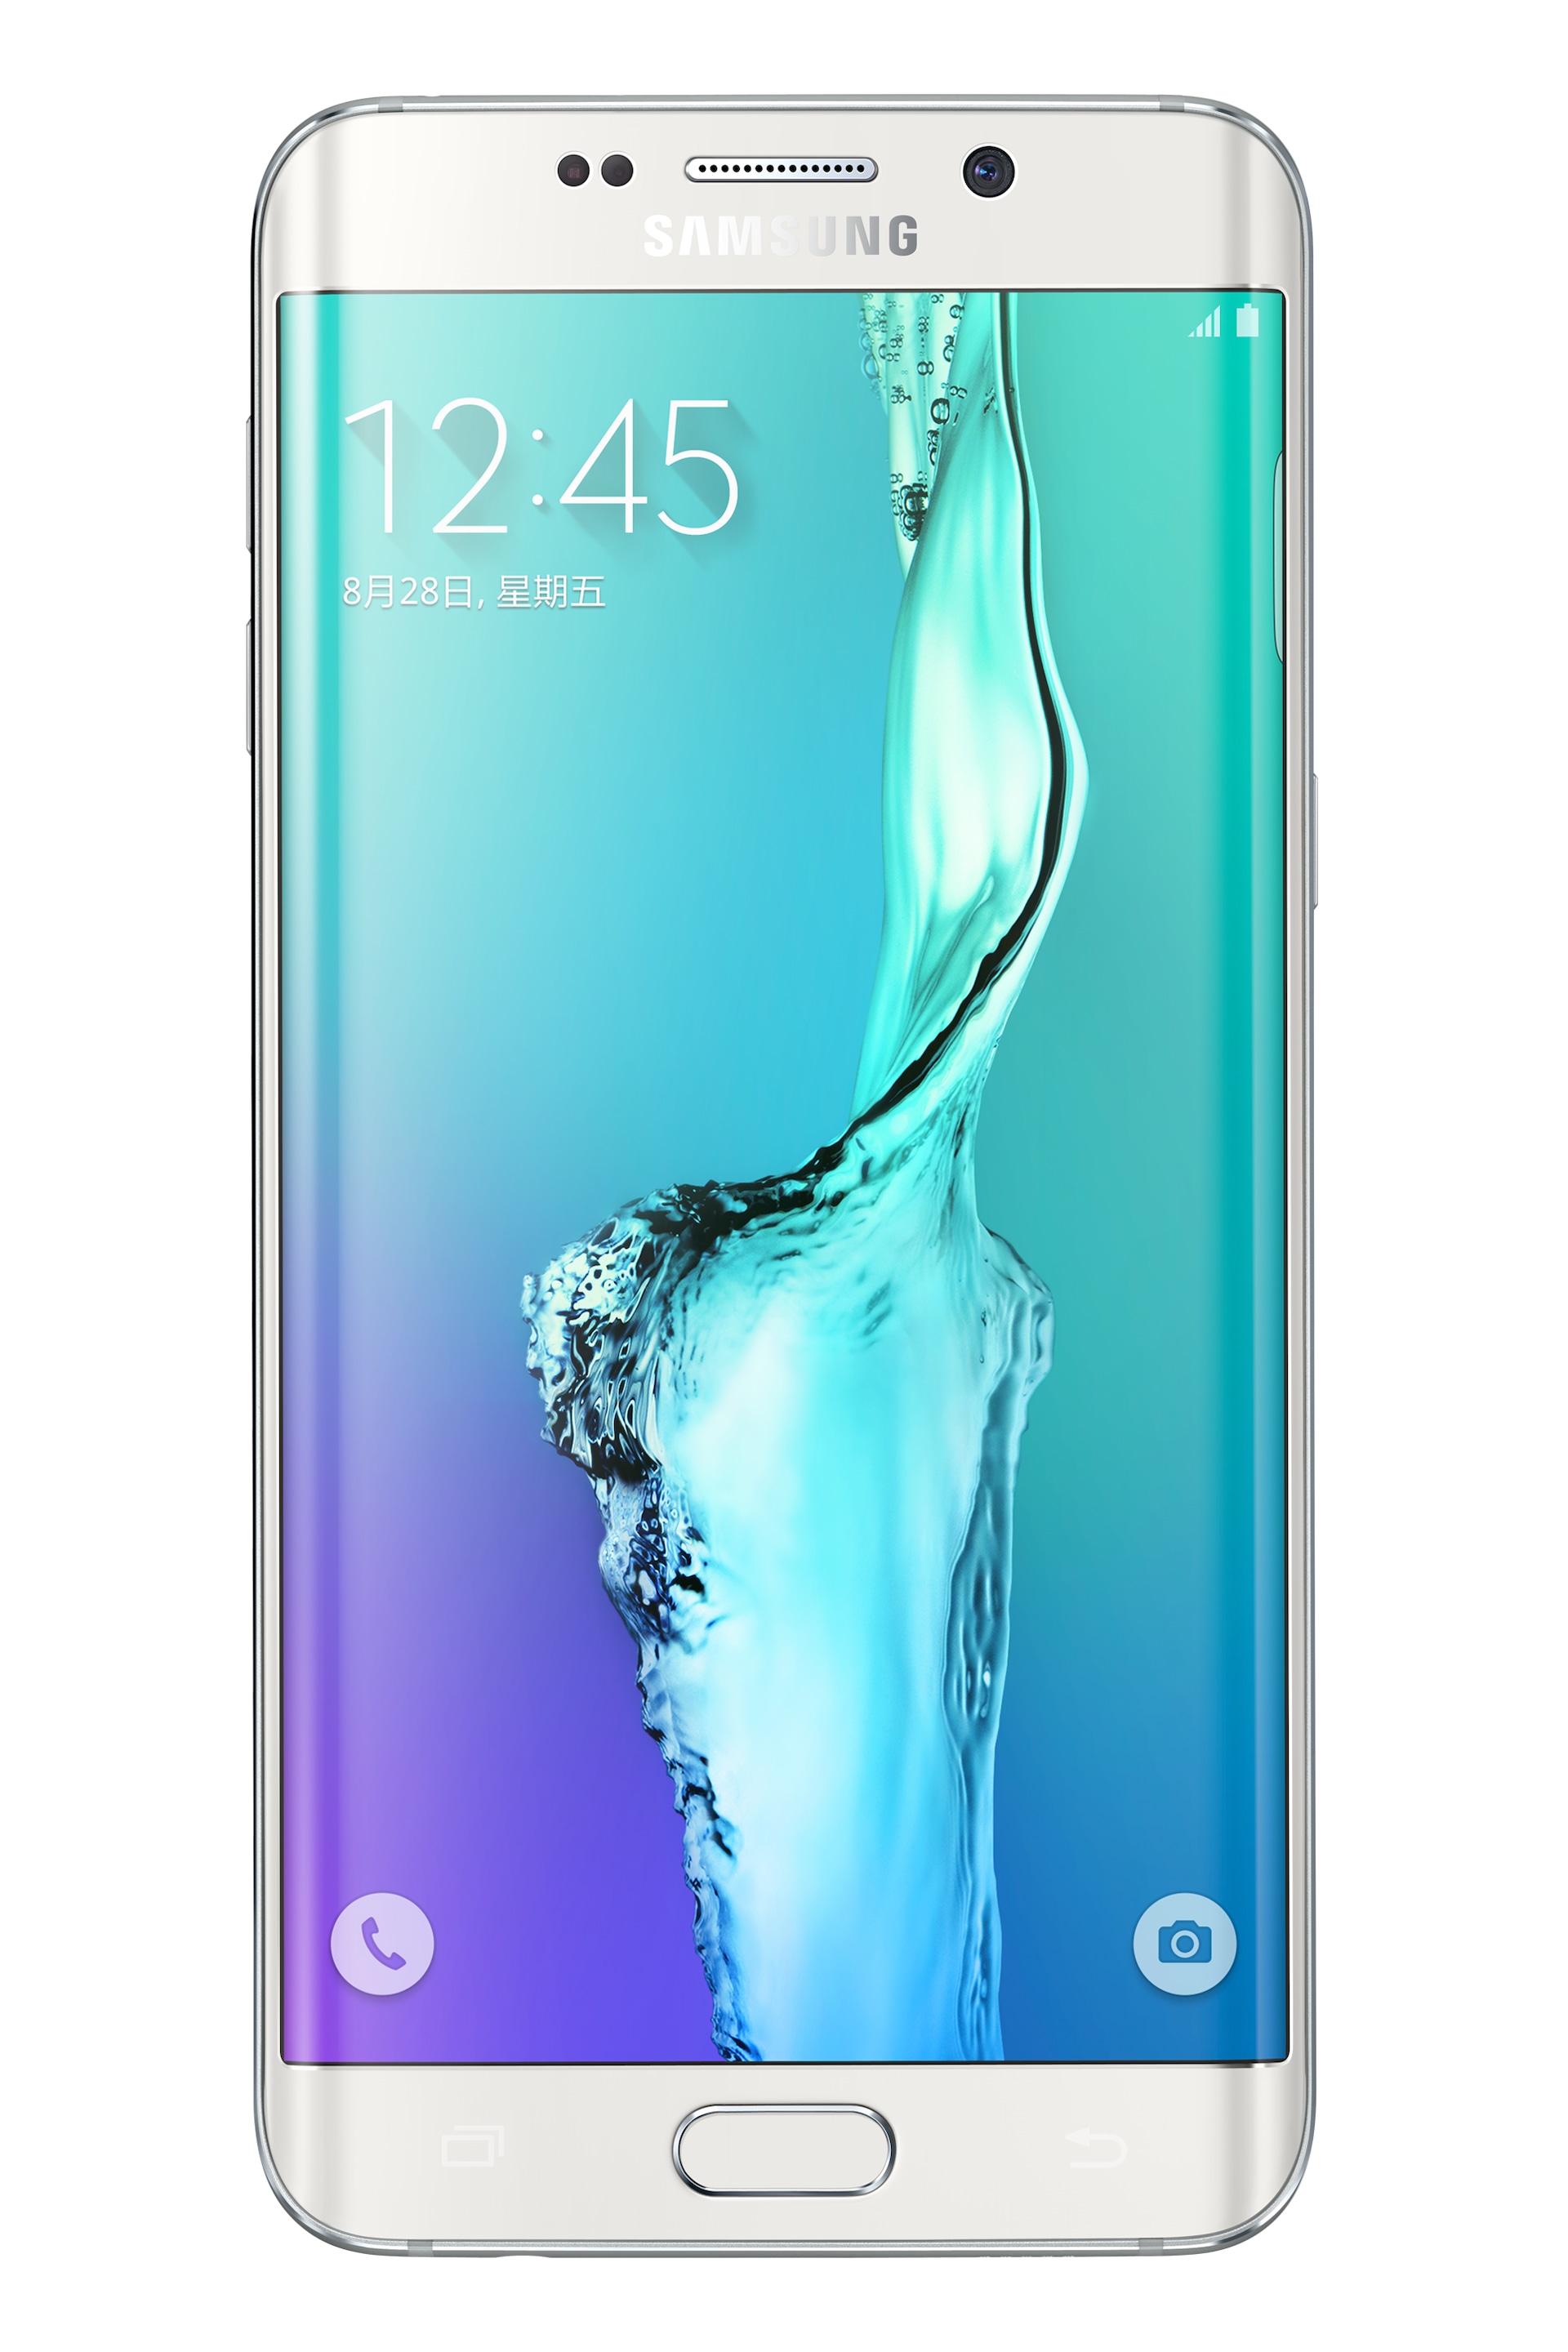 三星盖乐世 Samsung Galaxy Z Fold2 5G 中国新品发布会 - 案例 - ONSITECLUB - 体验营销案例集锦